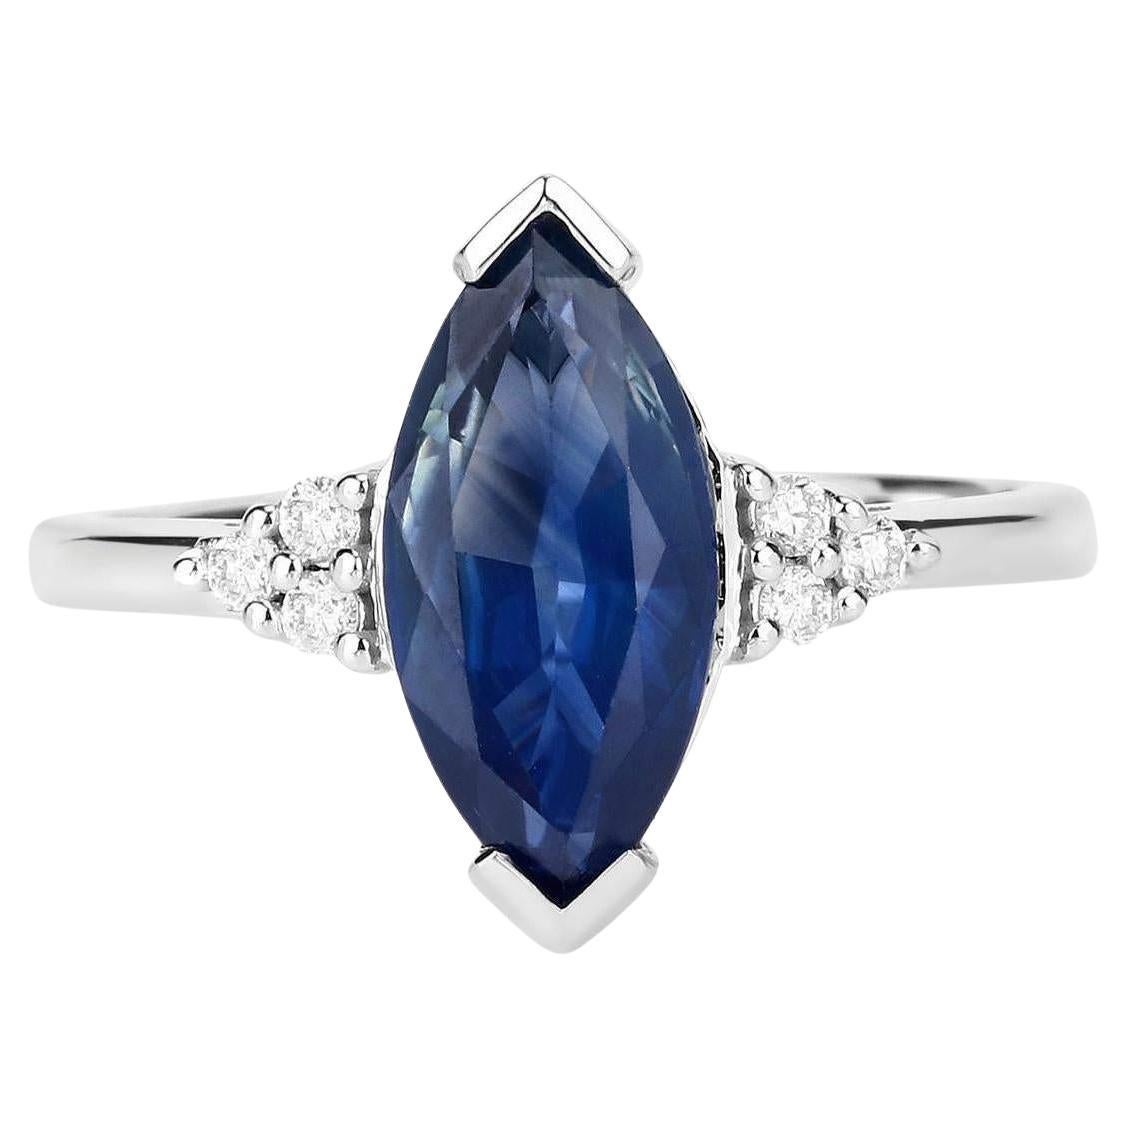 Blauer Saphir Ring mit Diamanten 4,83 Karat 14K Weißgold